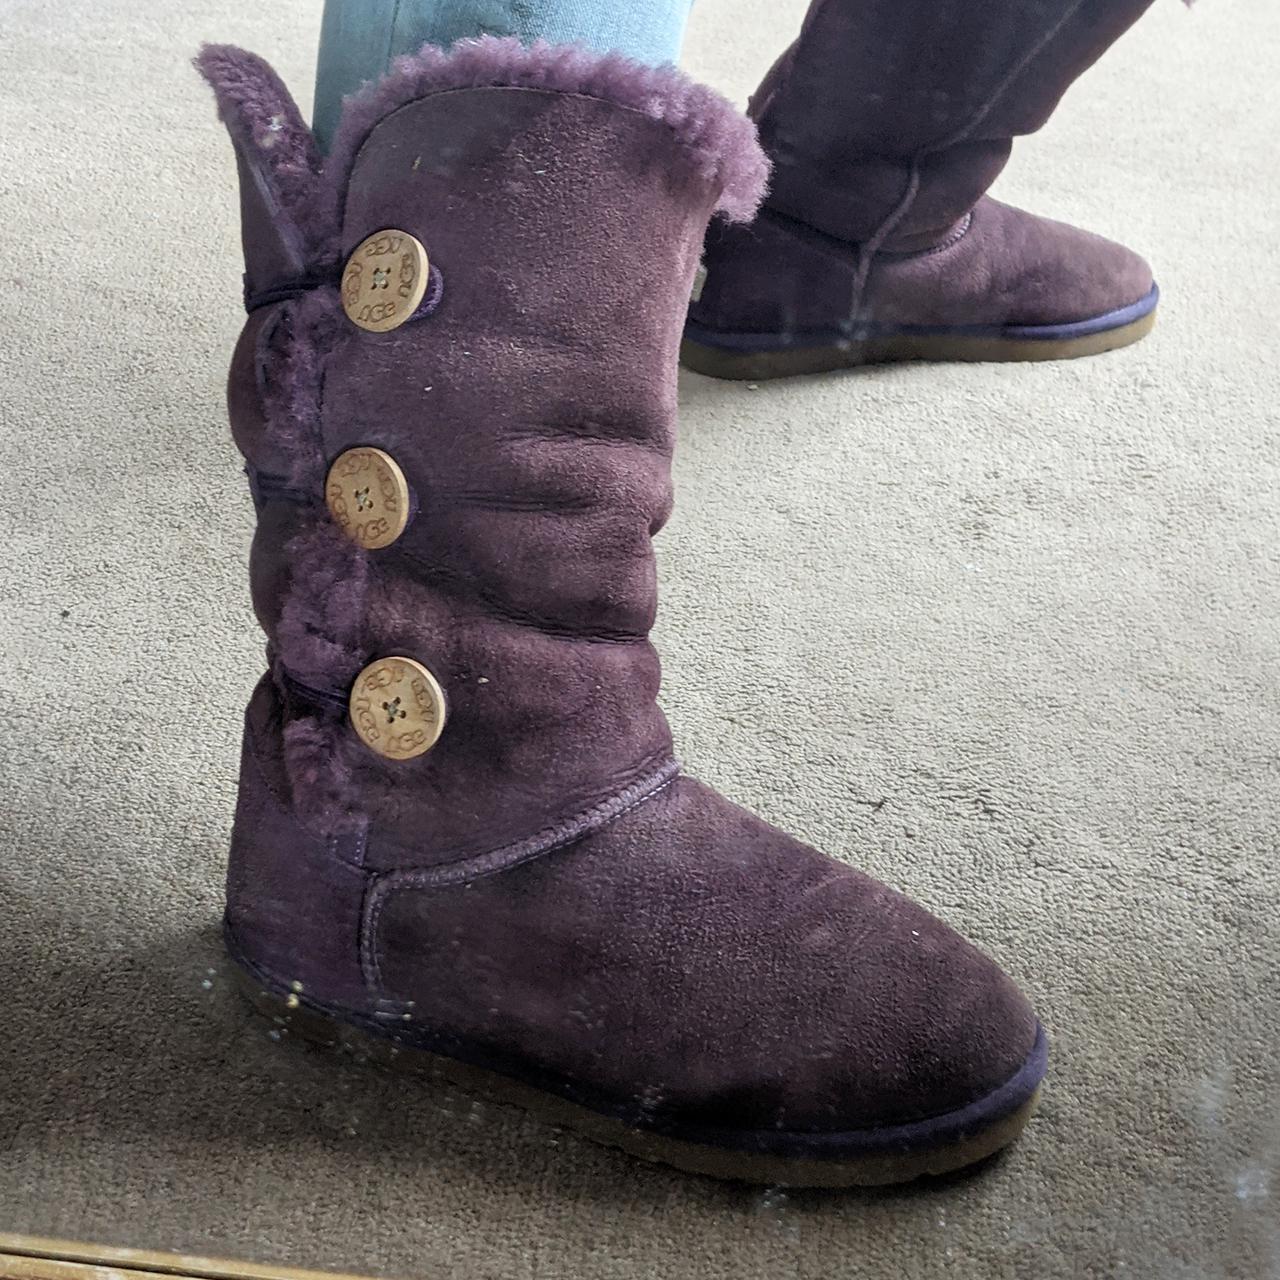 Damaged - Genuine Ugg Boots Purple Suede Fur Lined... - Depop